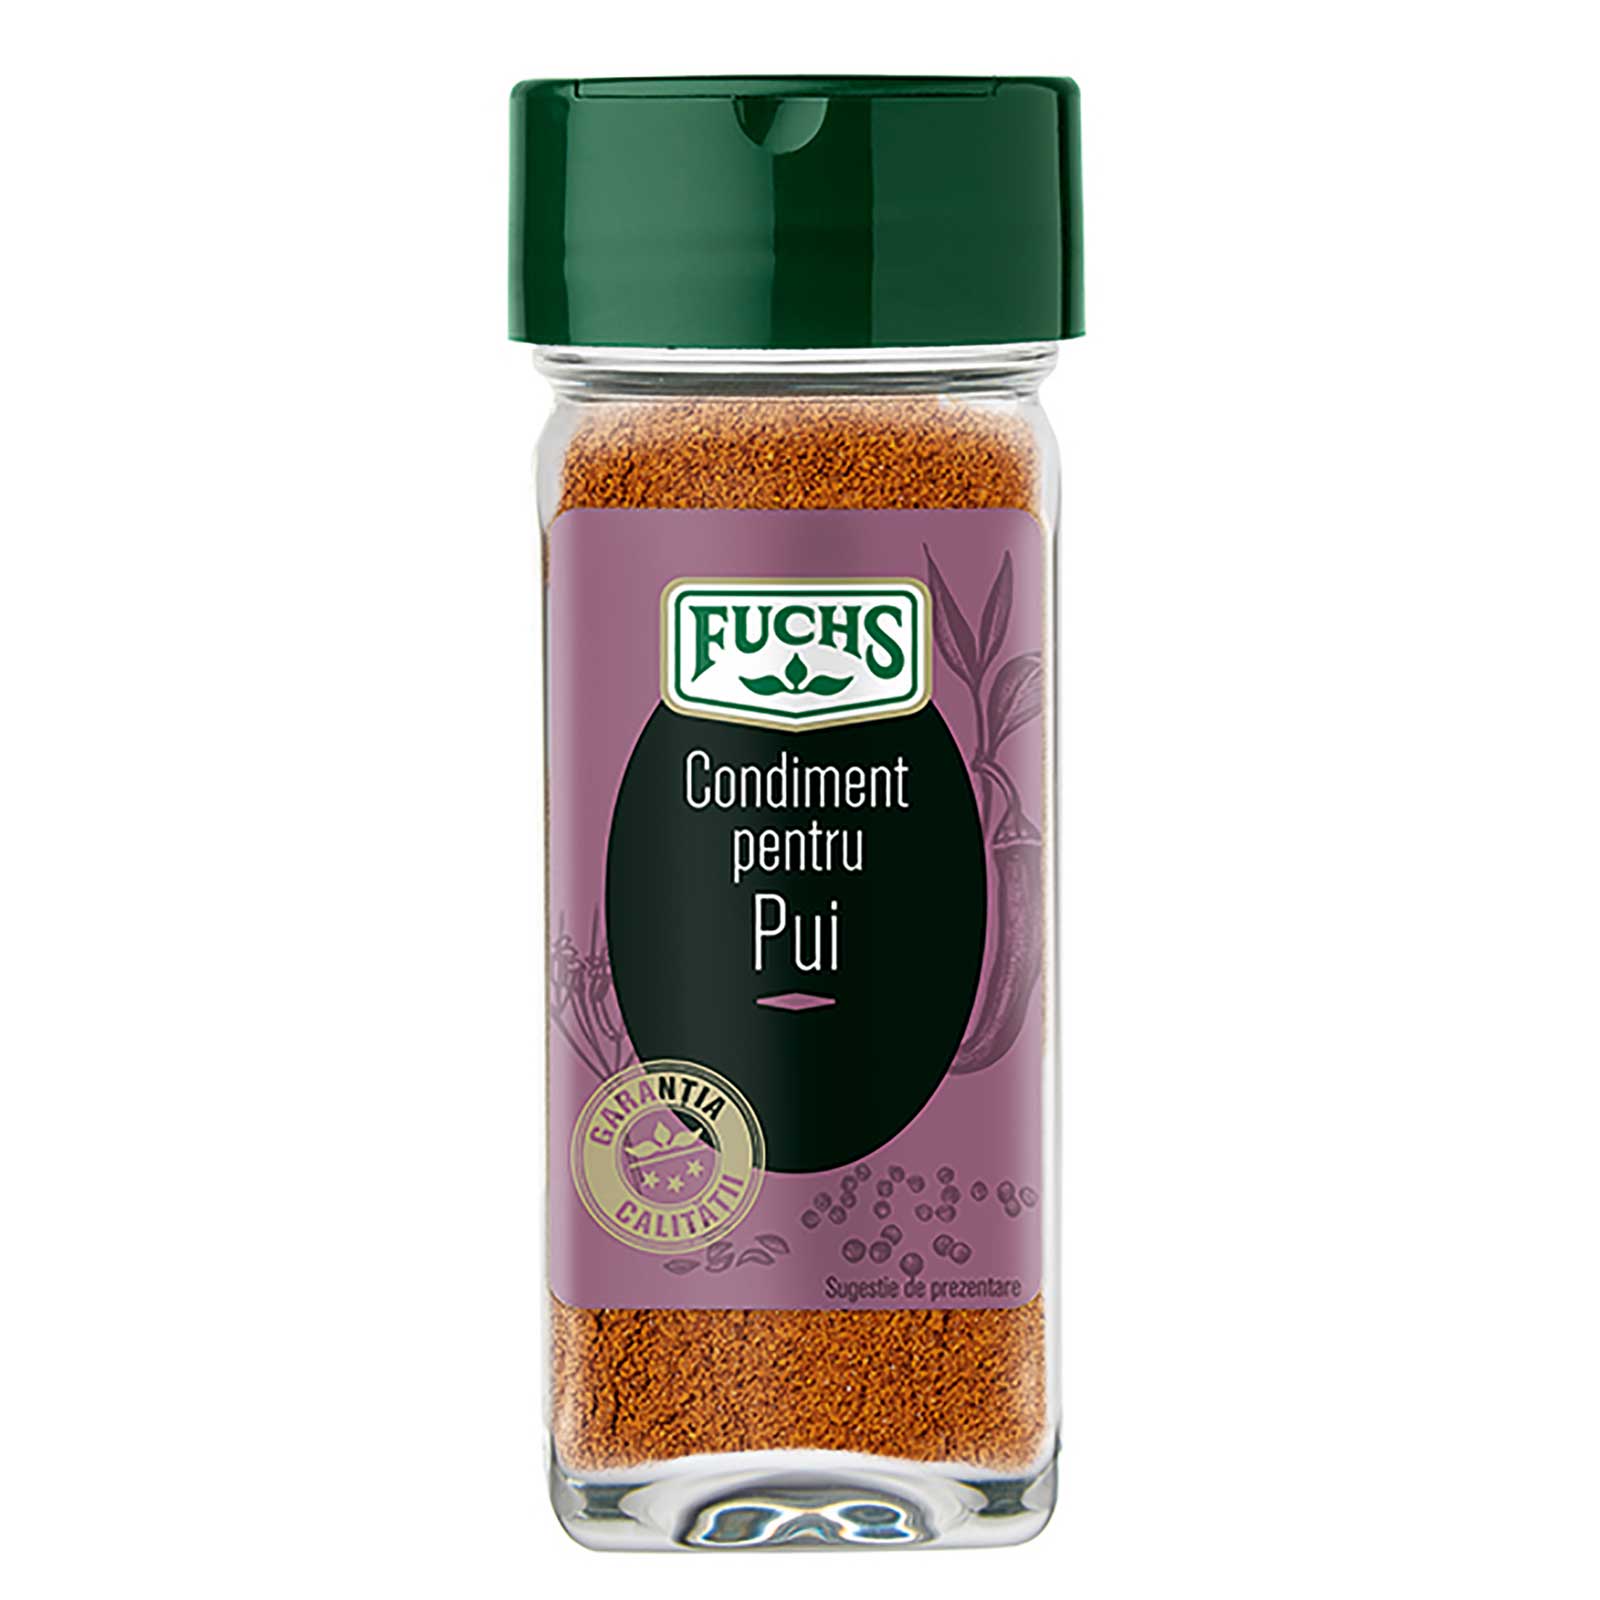 Condiment pentru Pui, Fuchs, 50g